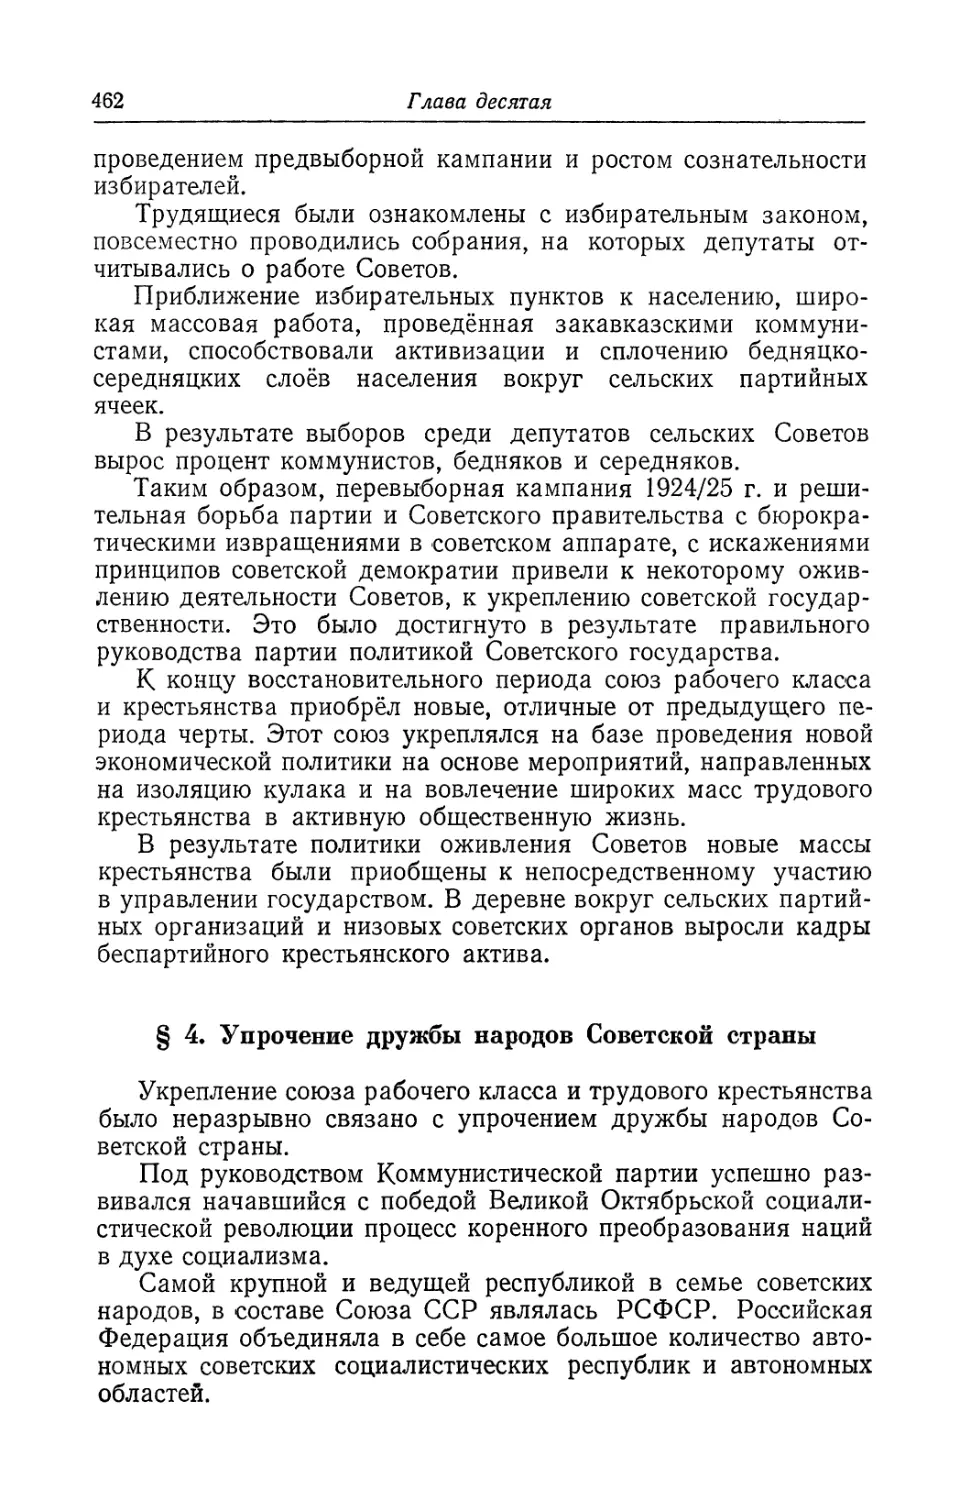 § 4. Упрочение дружбы народов Советской страны